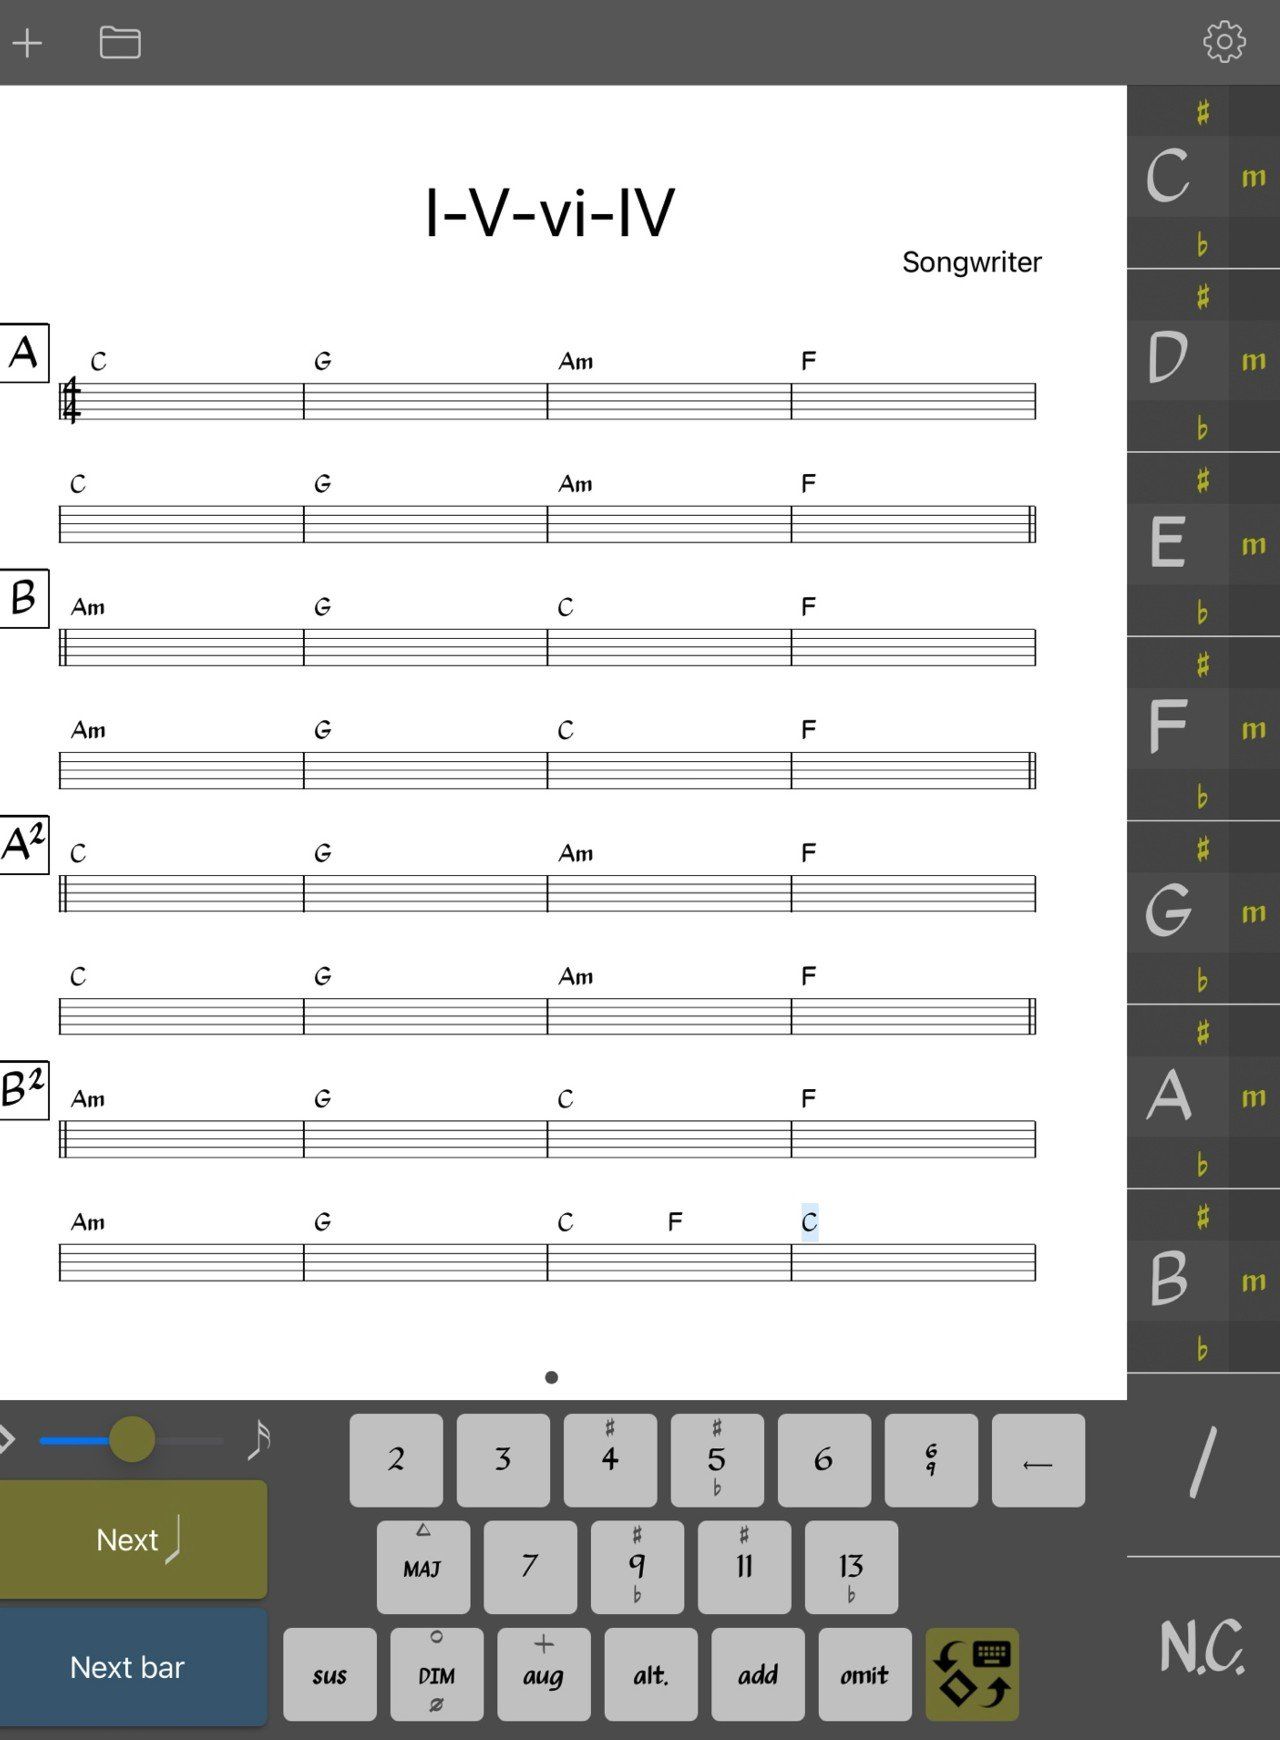 I-V-vi-IV chord progression example